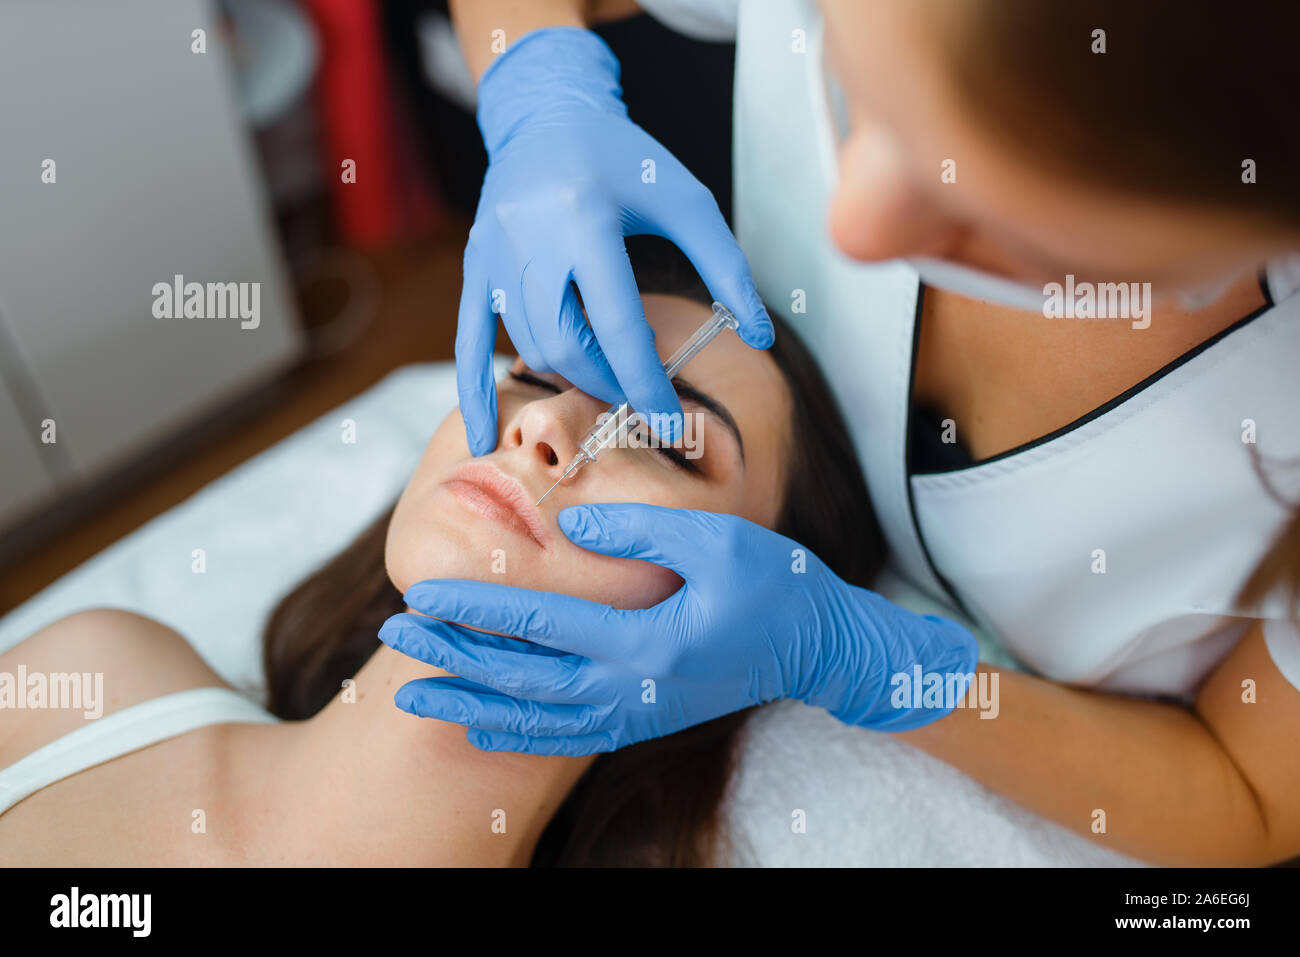 Cosmetician face donne des injections de botox au patient Banque D'Images